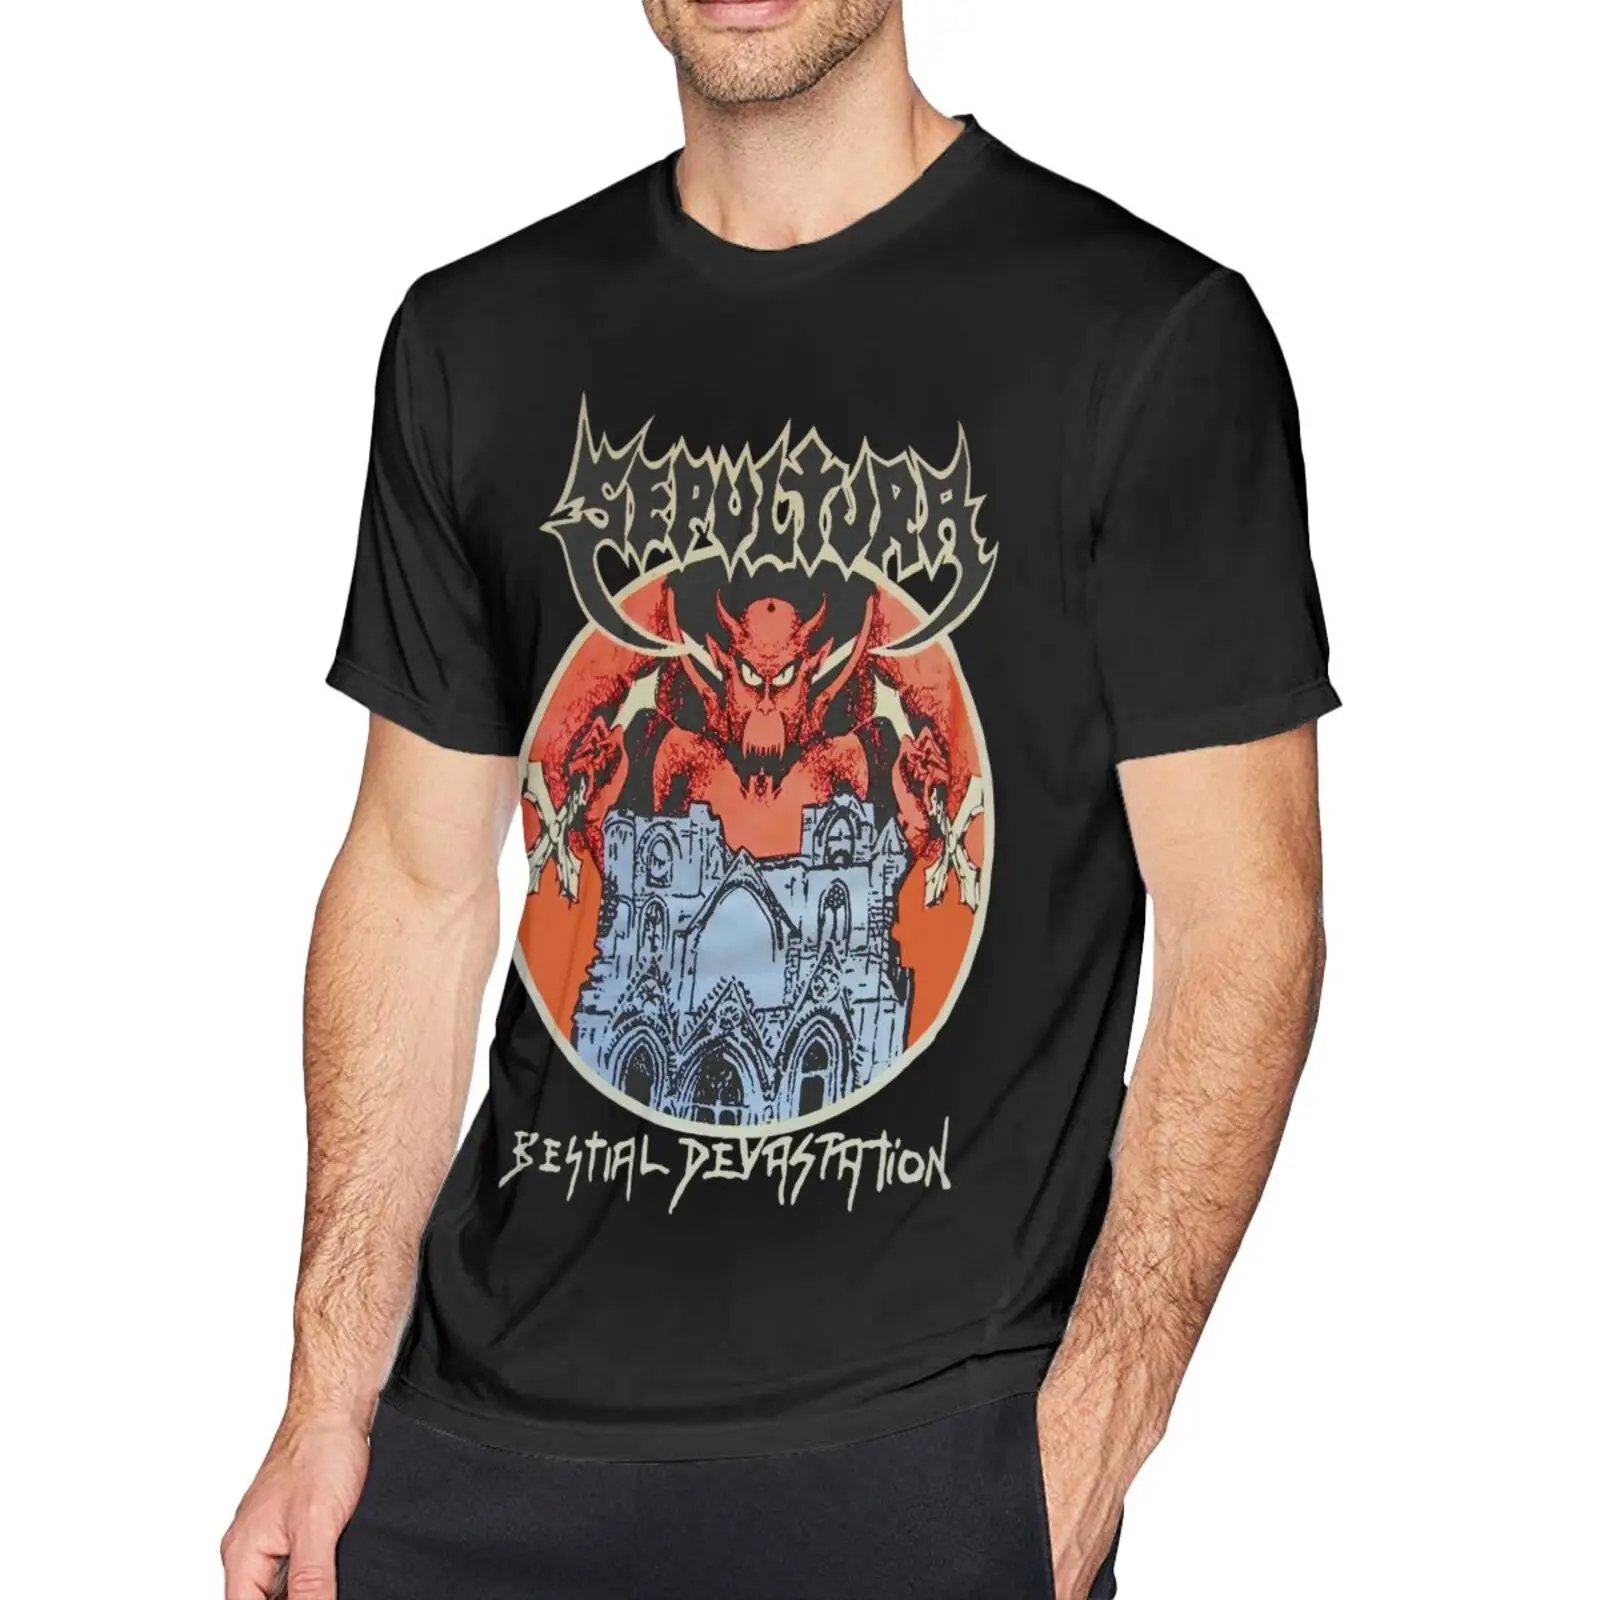 

Мужская футболка Sepultura с изображением разрушительной цепи, 1969, Мужская футболка, Мужская одежда, футболки, мужская одежда